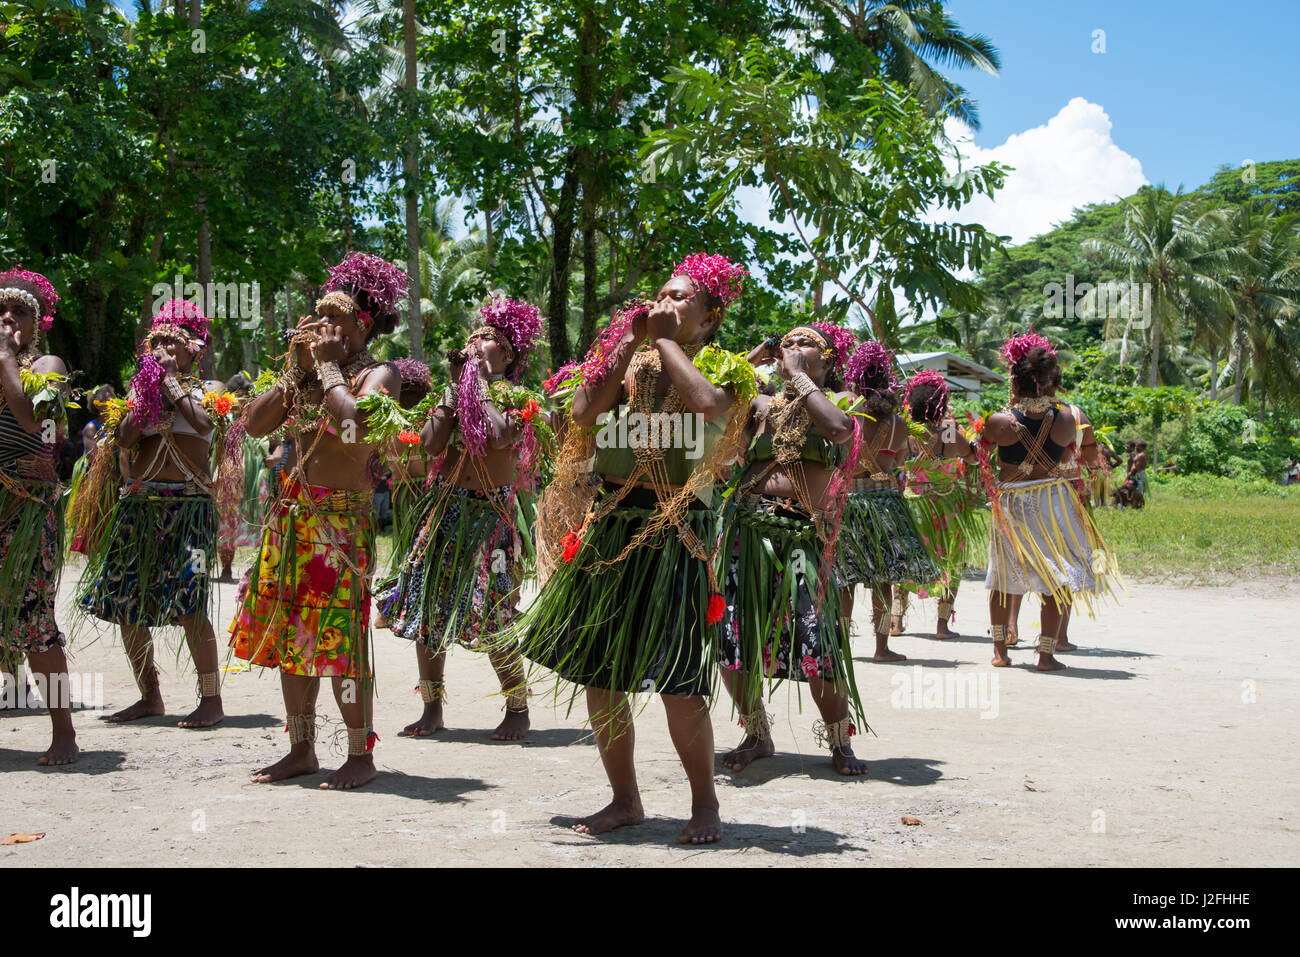 La Melanesia, Makira-Ulawa Provincia, Isole Salomone, isola di Owaraha o Owa Raha (precedentemente noto come Santa Ana), villaggio di Gupuna aka Ghupuna. Tradizionali prestazioni folkloristiche della tipica donna danza. (Grandi dimensioni formato disponibile) Foto Stock